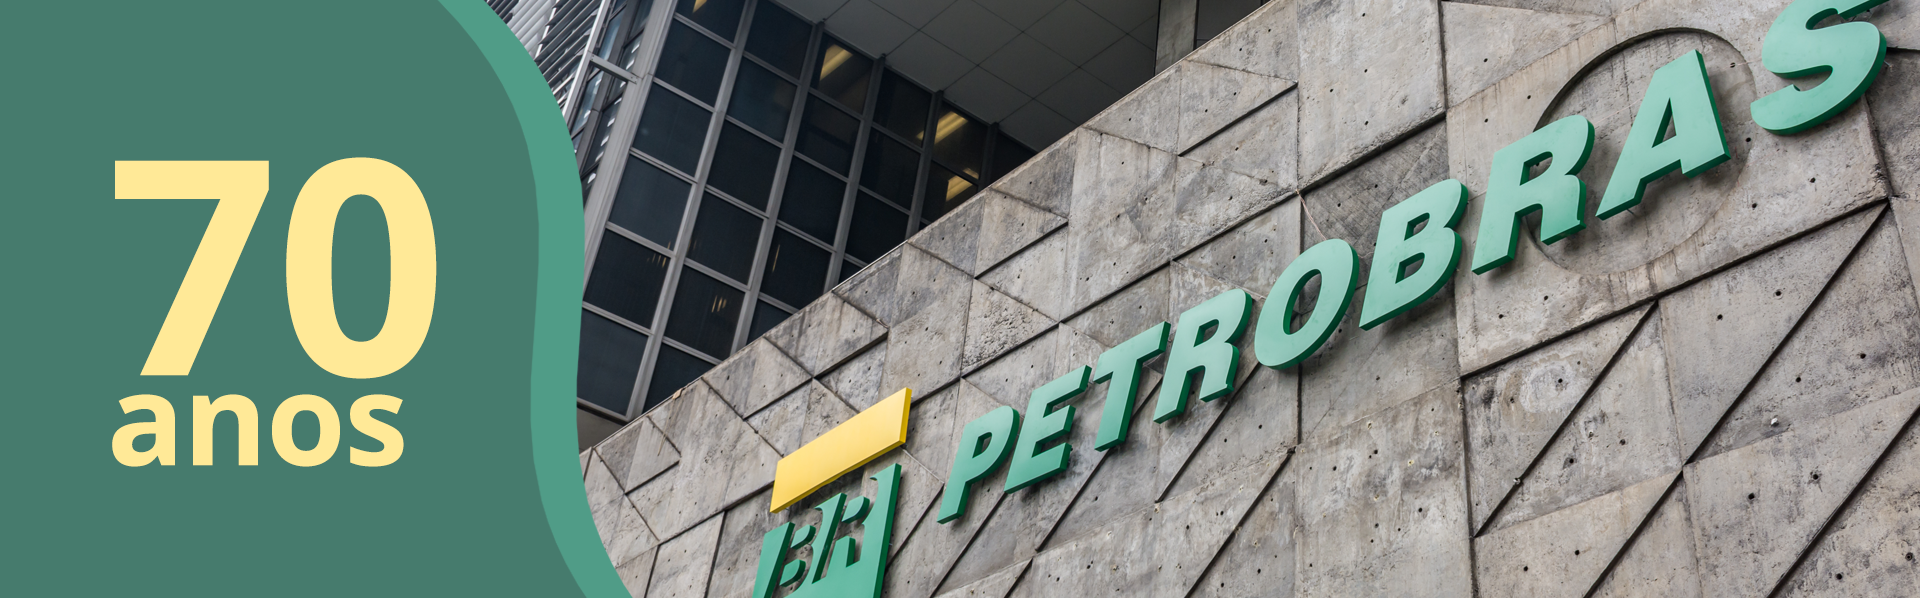 70 anos da Petrobras